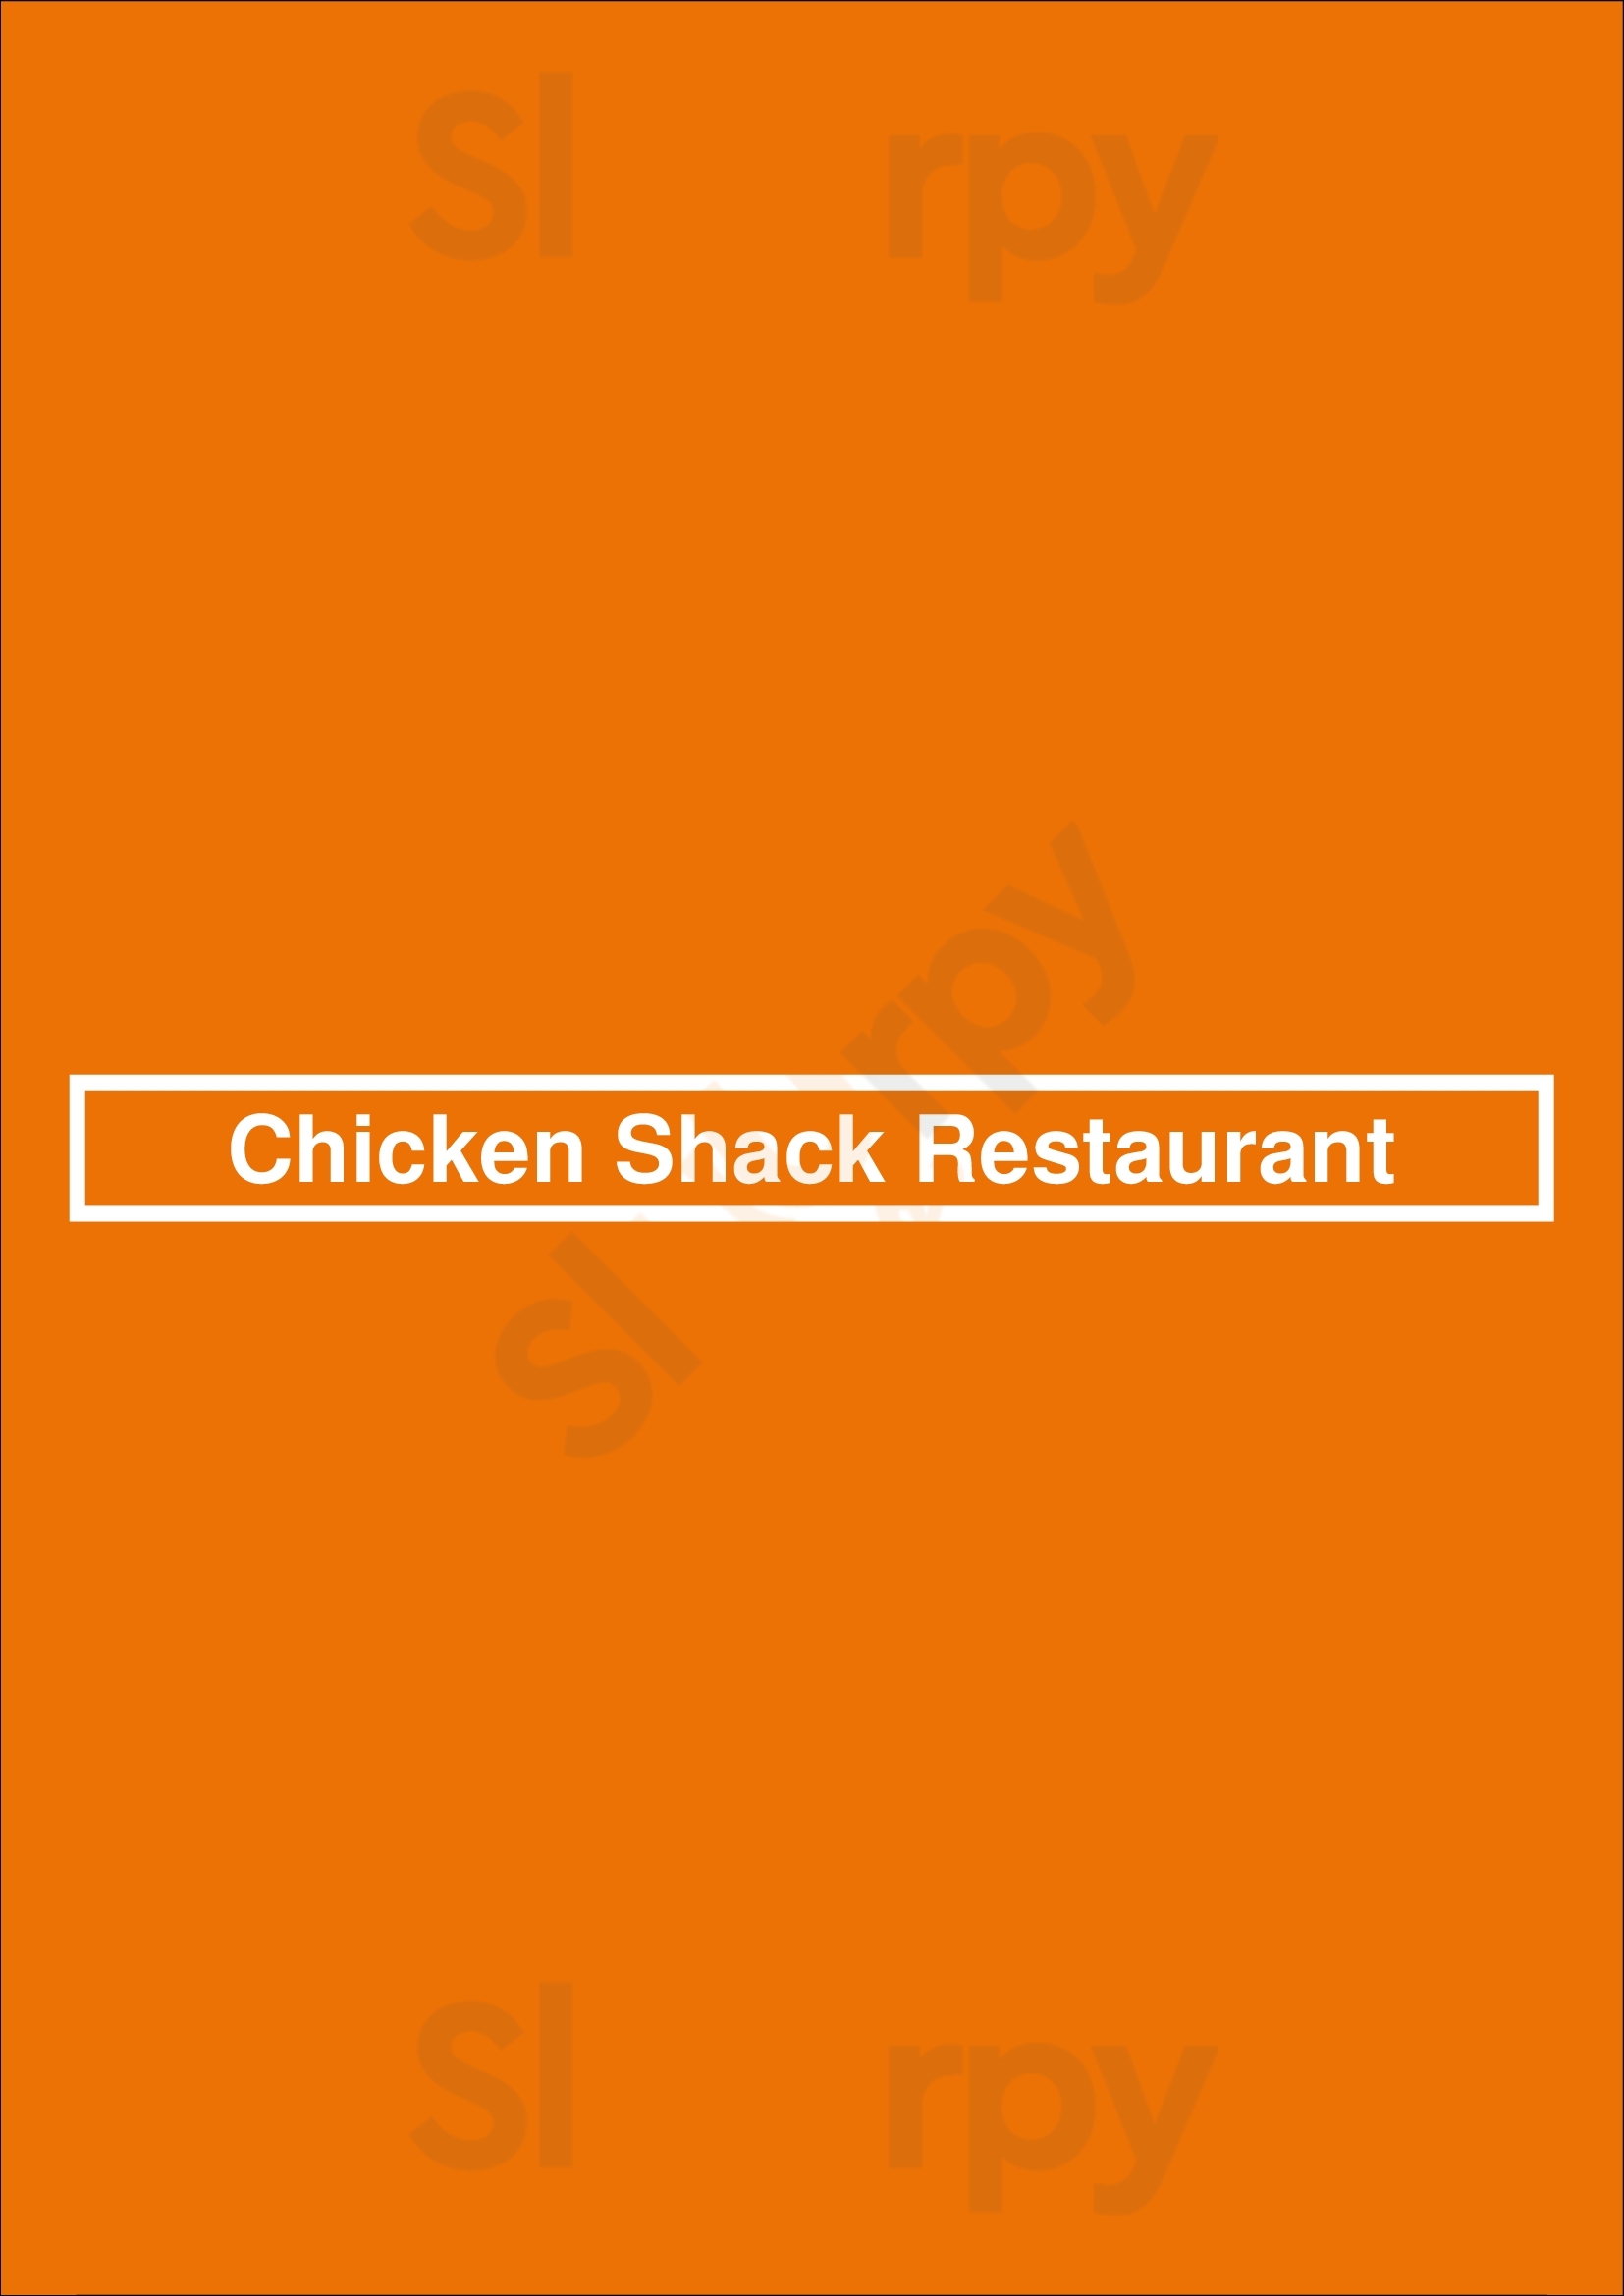 Chicken Shack Restaurant Chesterfield Menu - 1